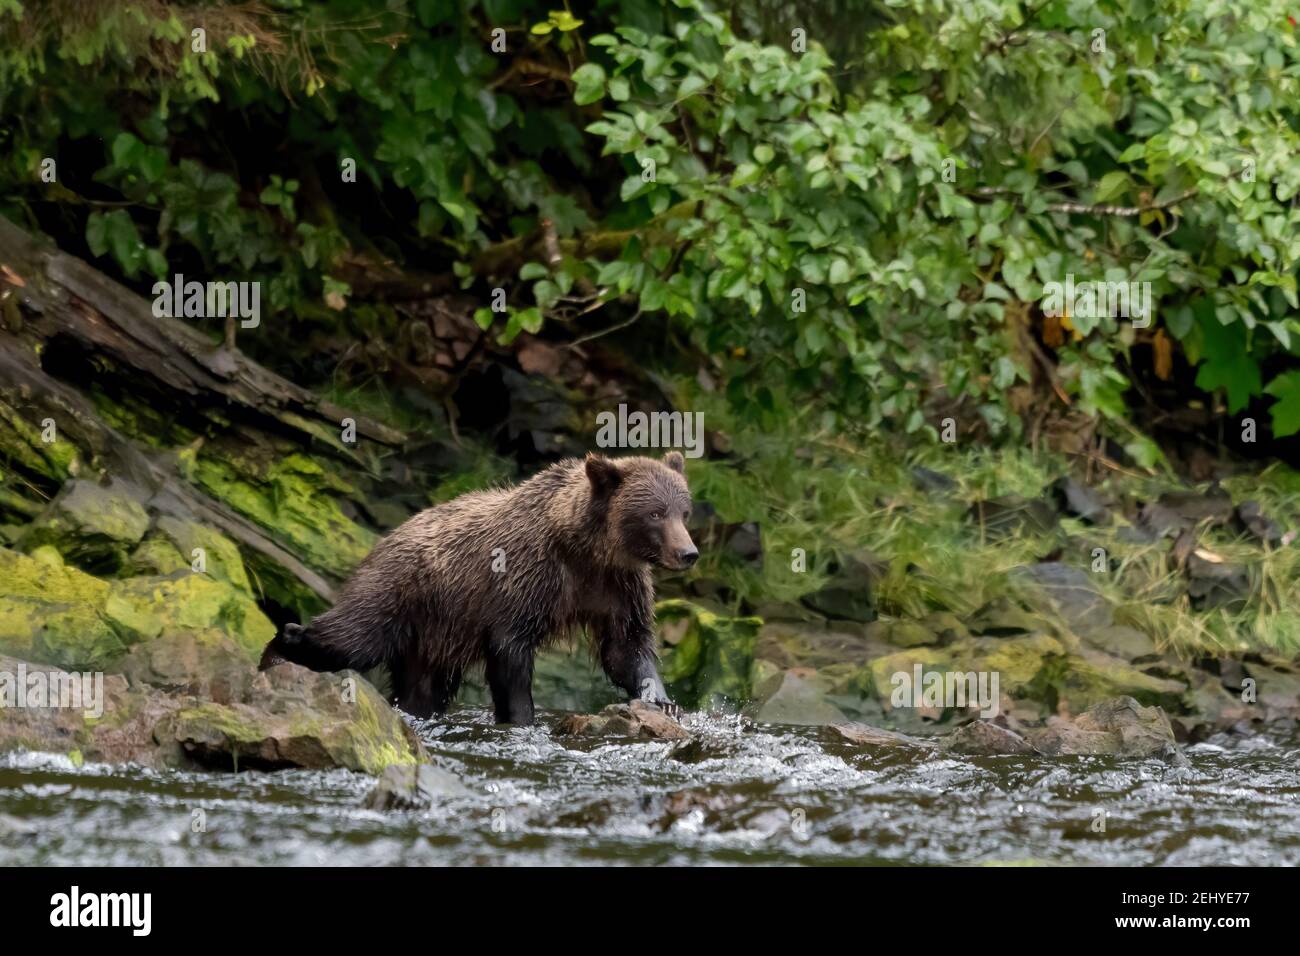 Un jeune ours brun côtier (Ursus arctos) qui coule de rivage dans une rivière rocheuse à la recherche de saumon. Banque D'Images